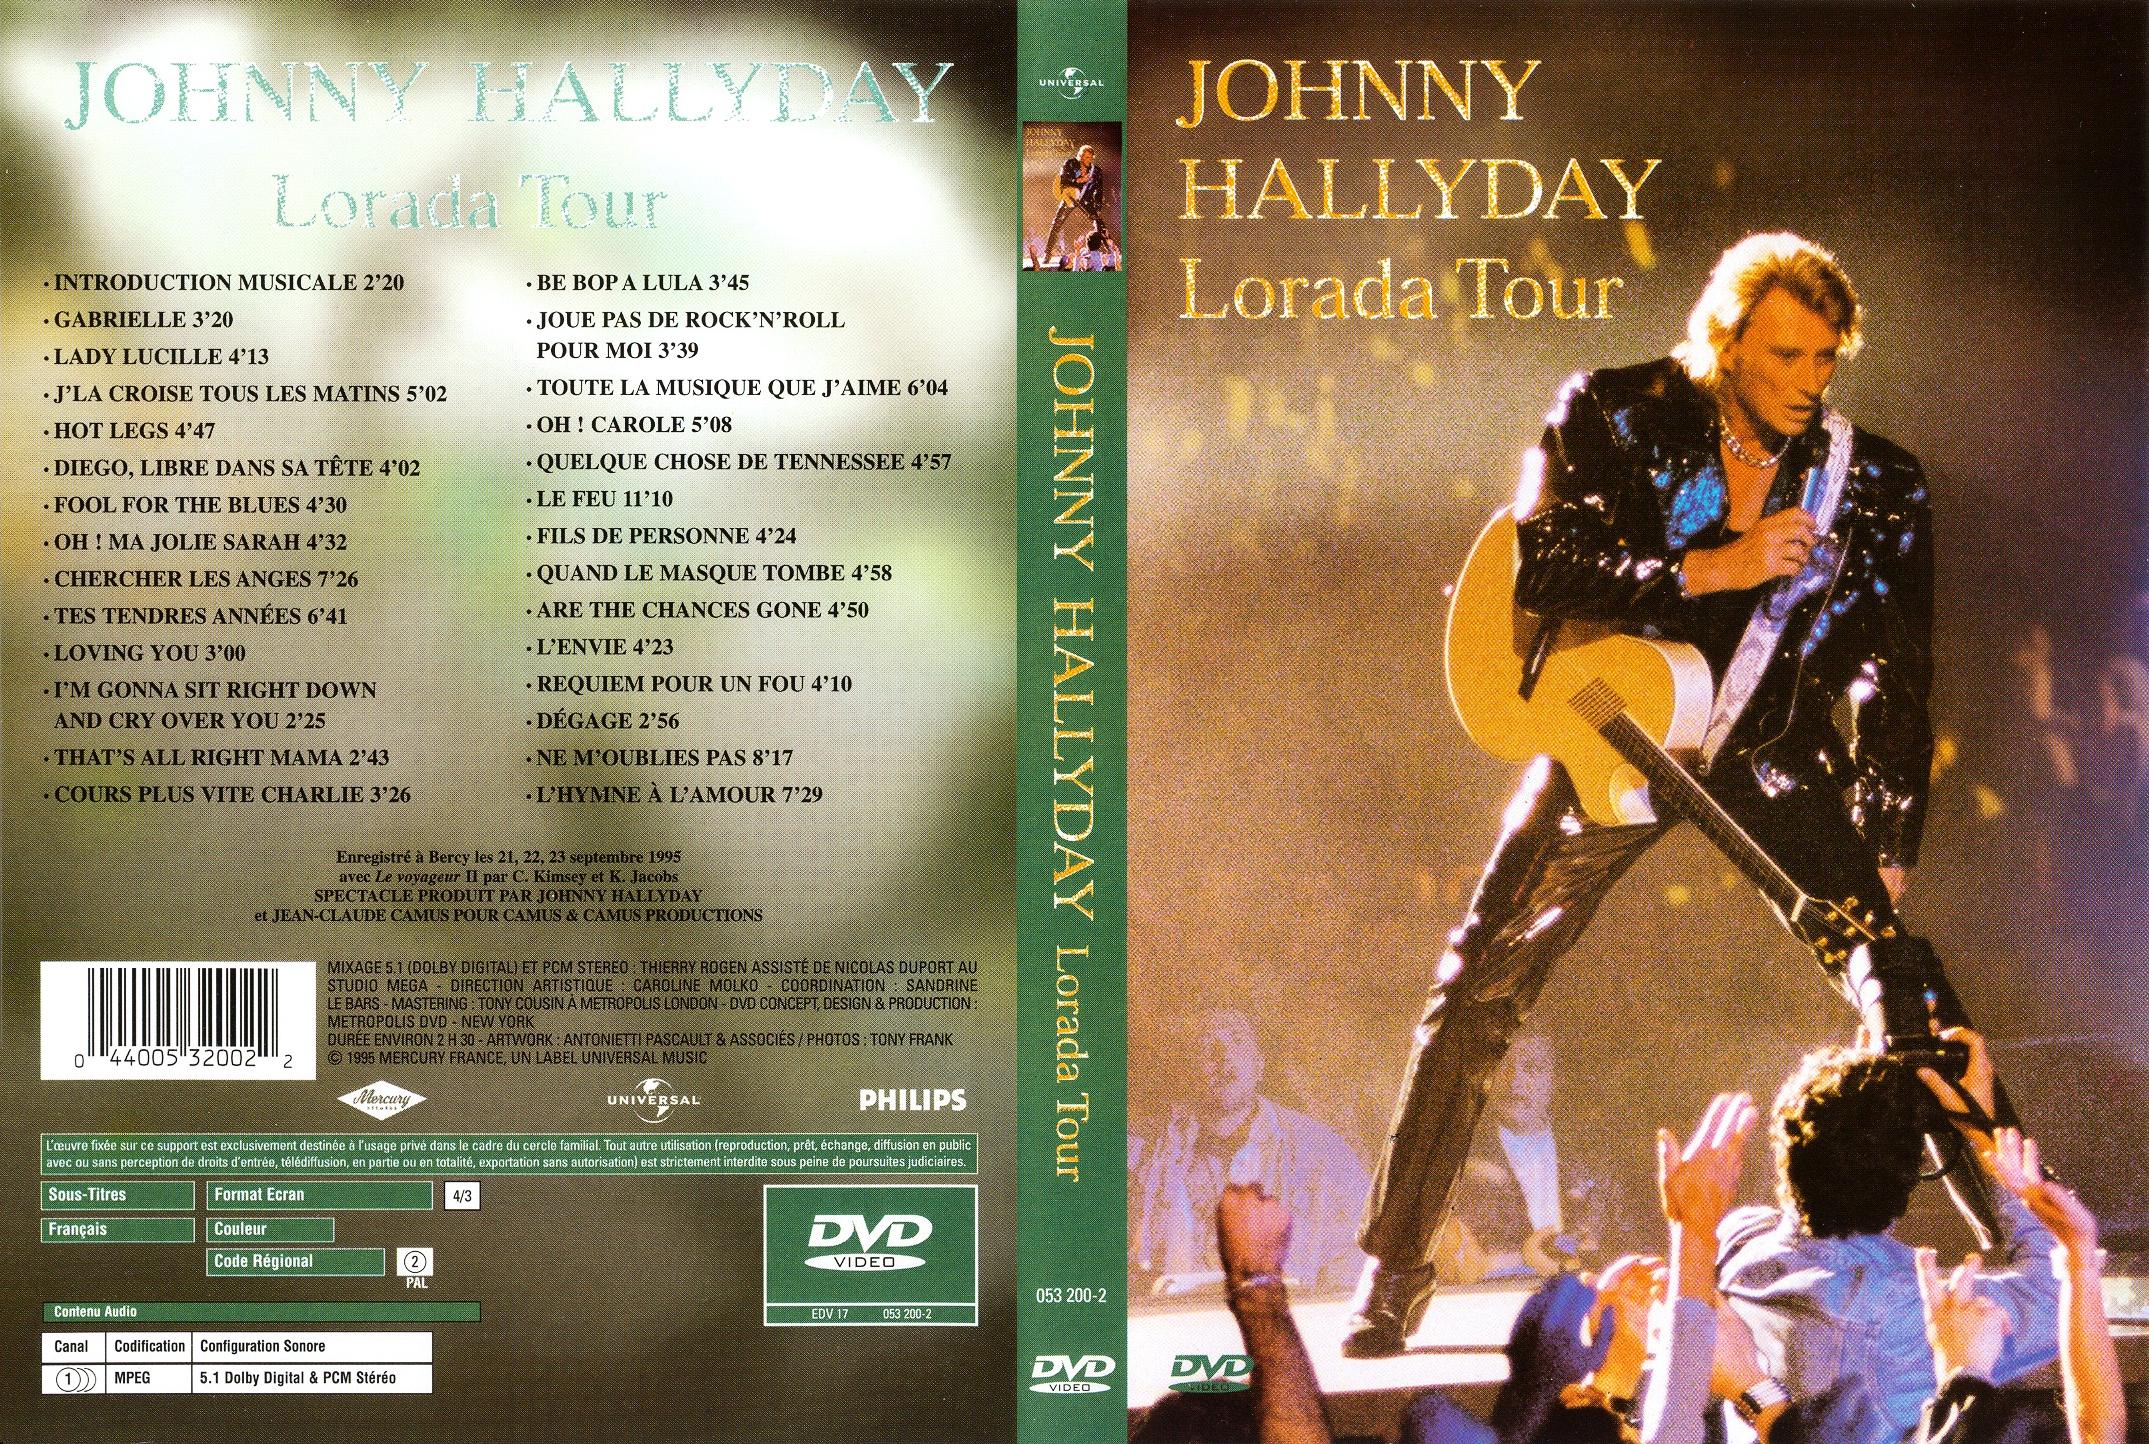 Jaquette DVD Johnny Hallyday lorada tour v2